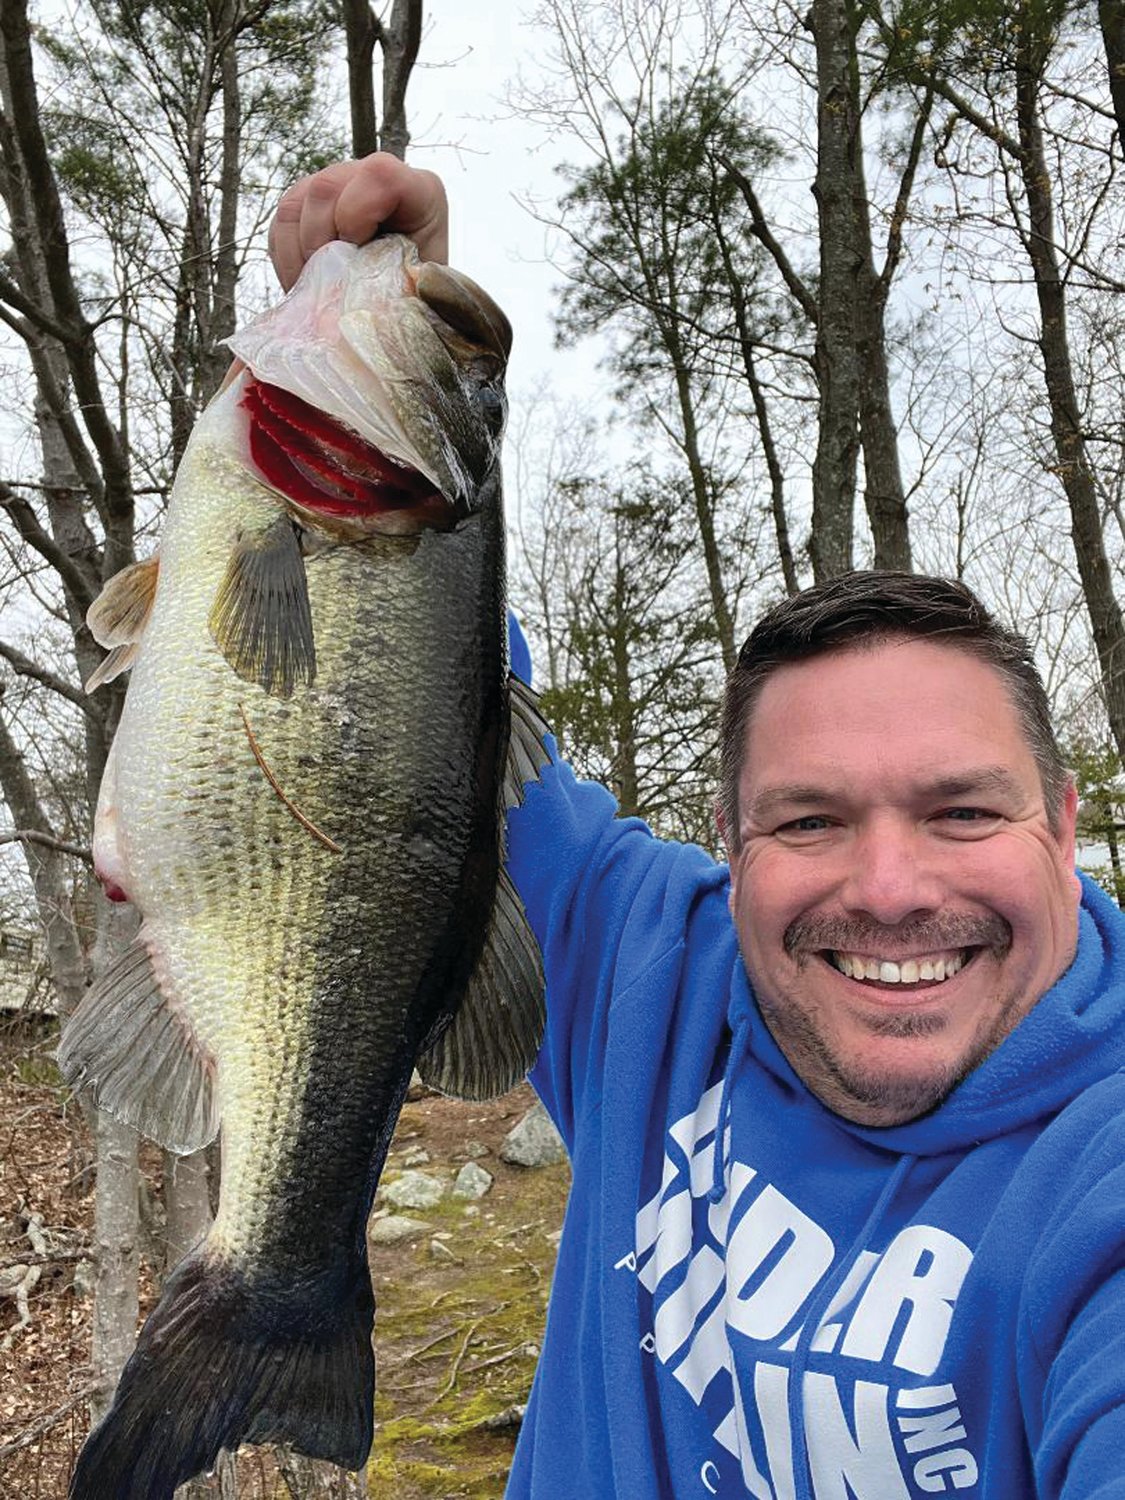 John Dionne of Smithfield, RI with the 7.6 pound largemouth bass he caught last week at Bowdish Lake, Chepachet, RI.